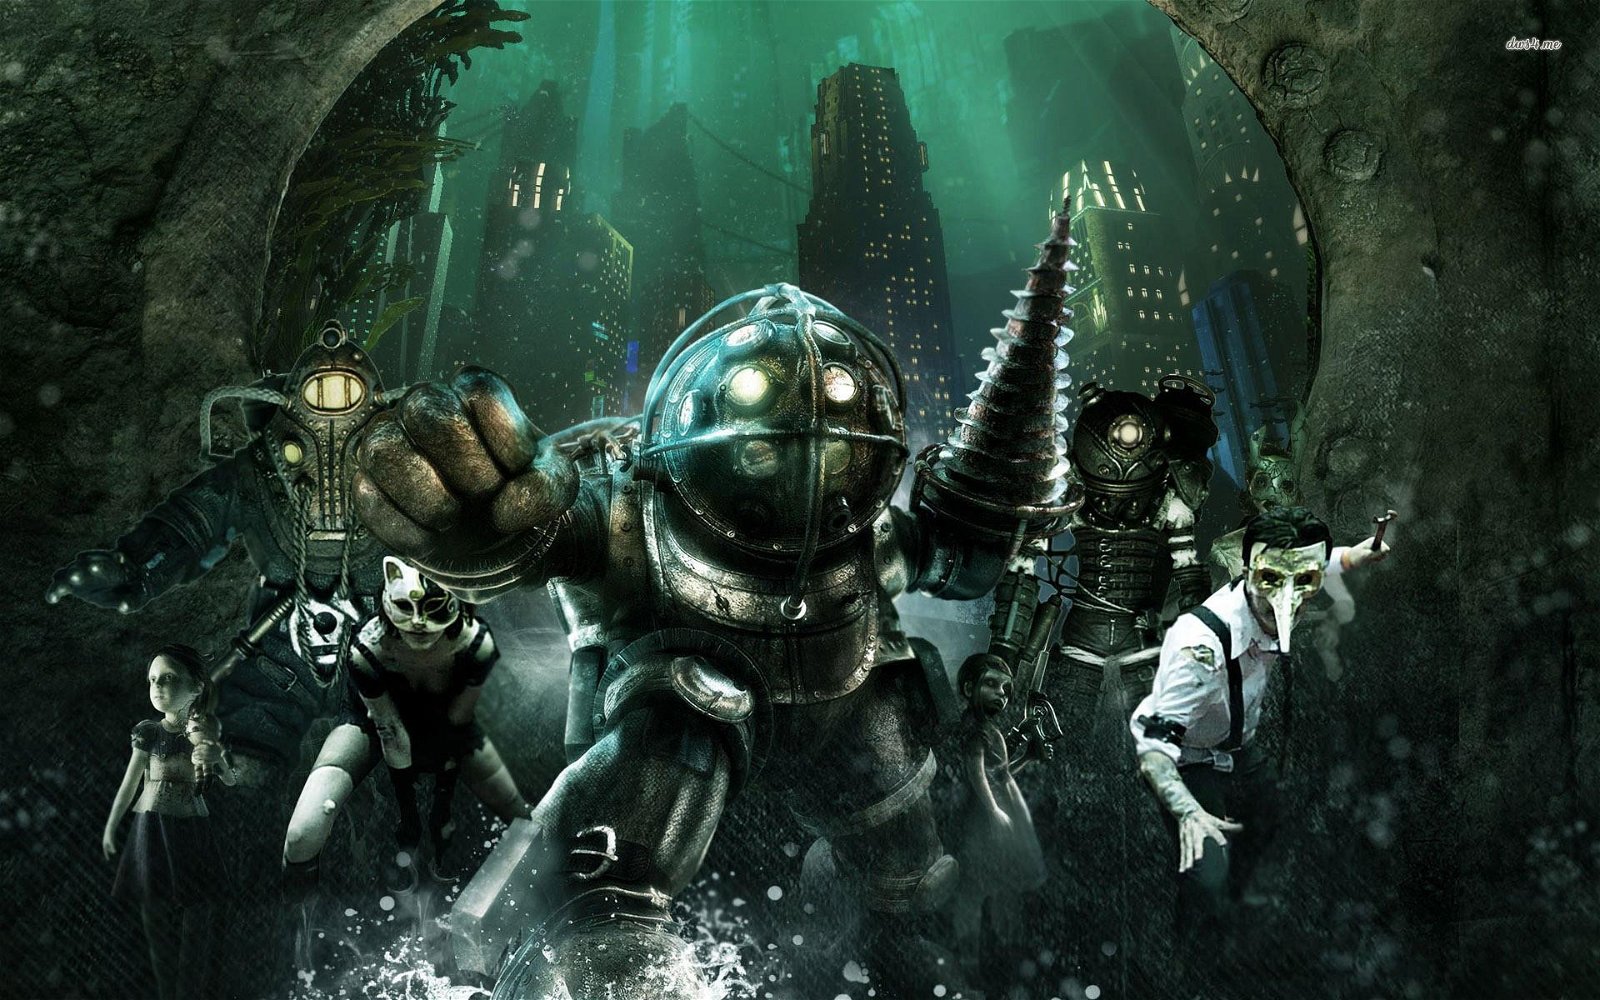 Il nuovo BioShock avrà un "mondo altamente reattivo", andrà "oltre lo scontro diretto"